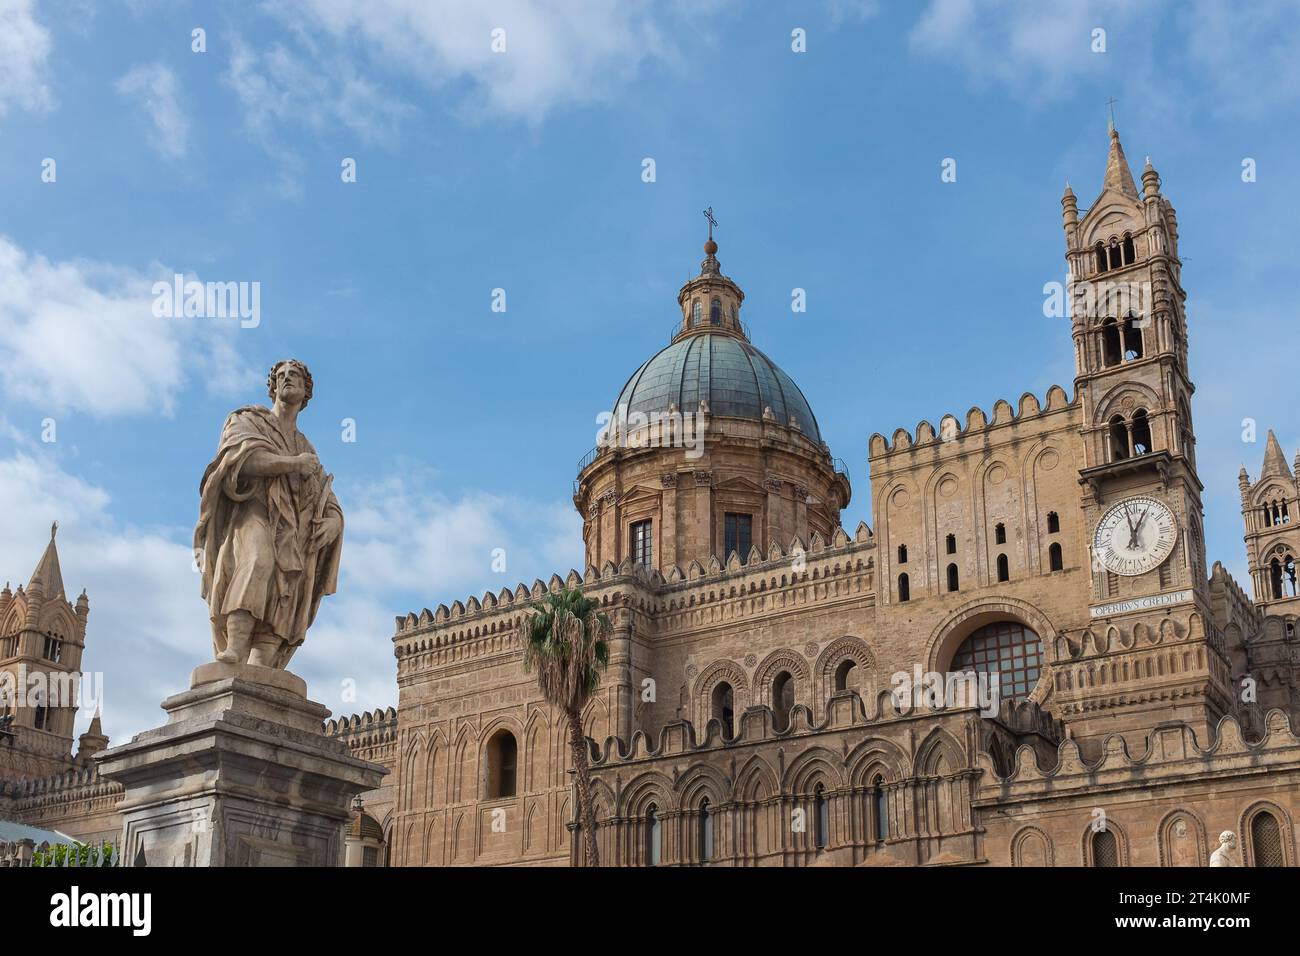 Palerme, Sicile, 2016. La statue de Saint Eustace en face de la cathédrale de Palerme (alias Basilica Cattedrale della Santa Vergine Maria Assunta) Banque D'Images